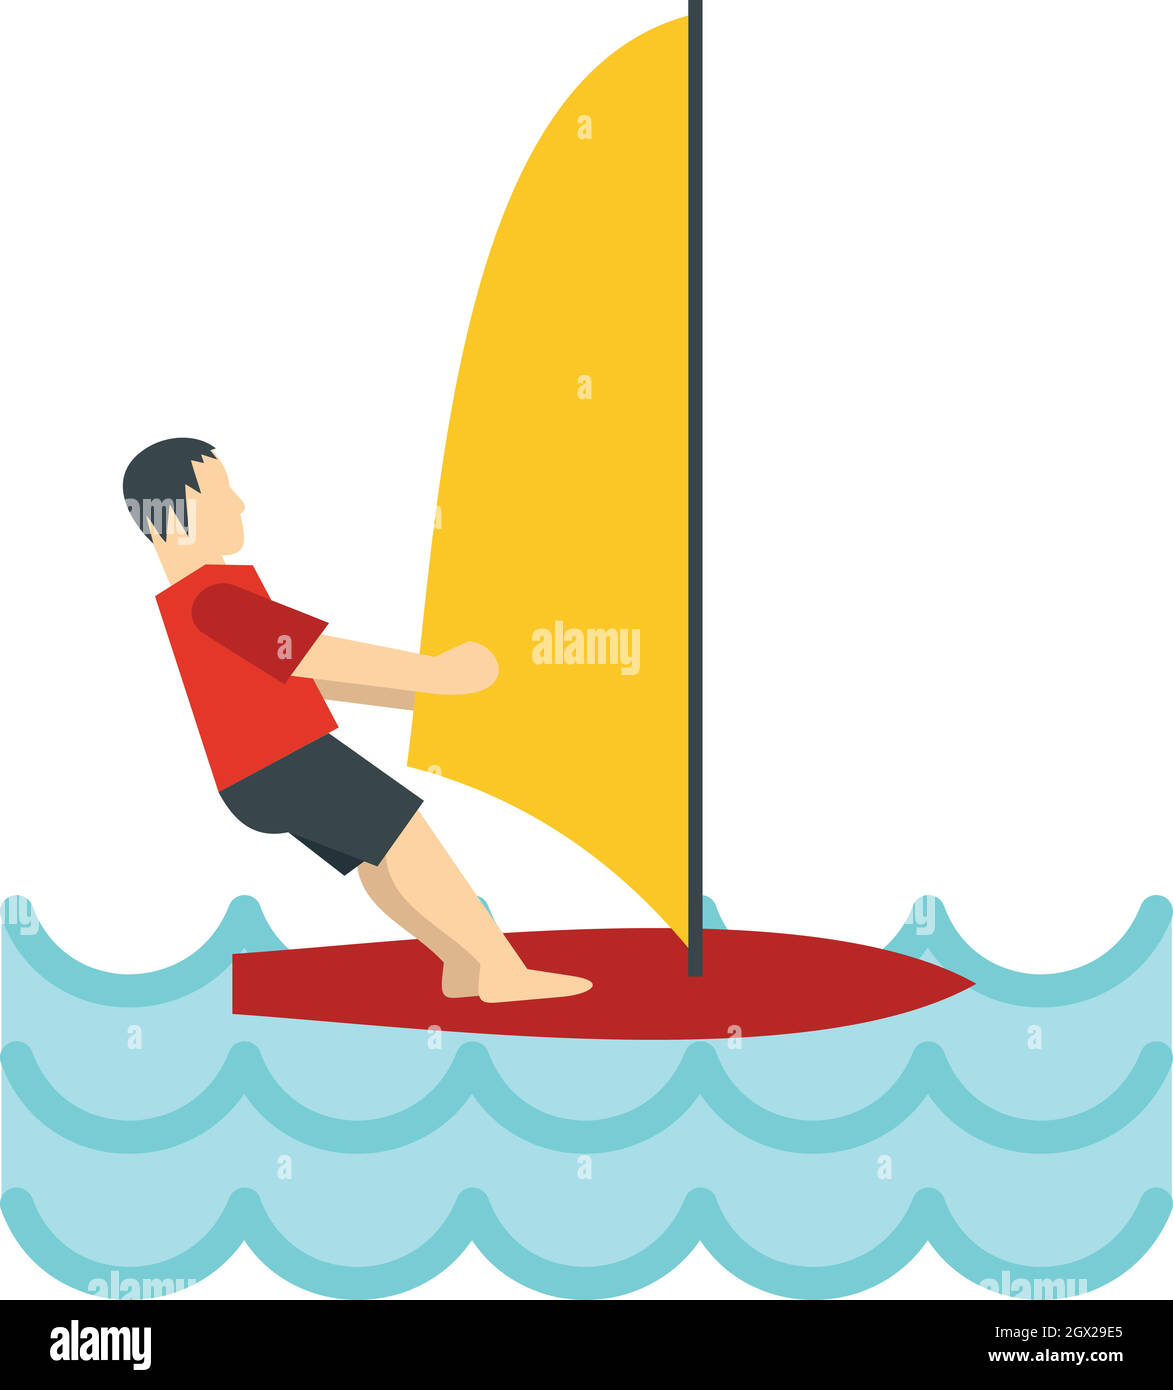 Icona di windsurf, stile piatto Illustrazione Vettoriale